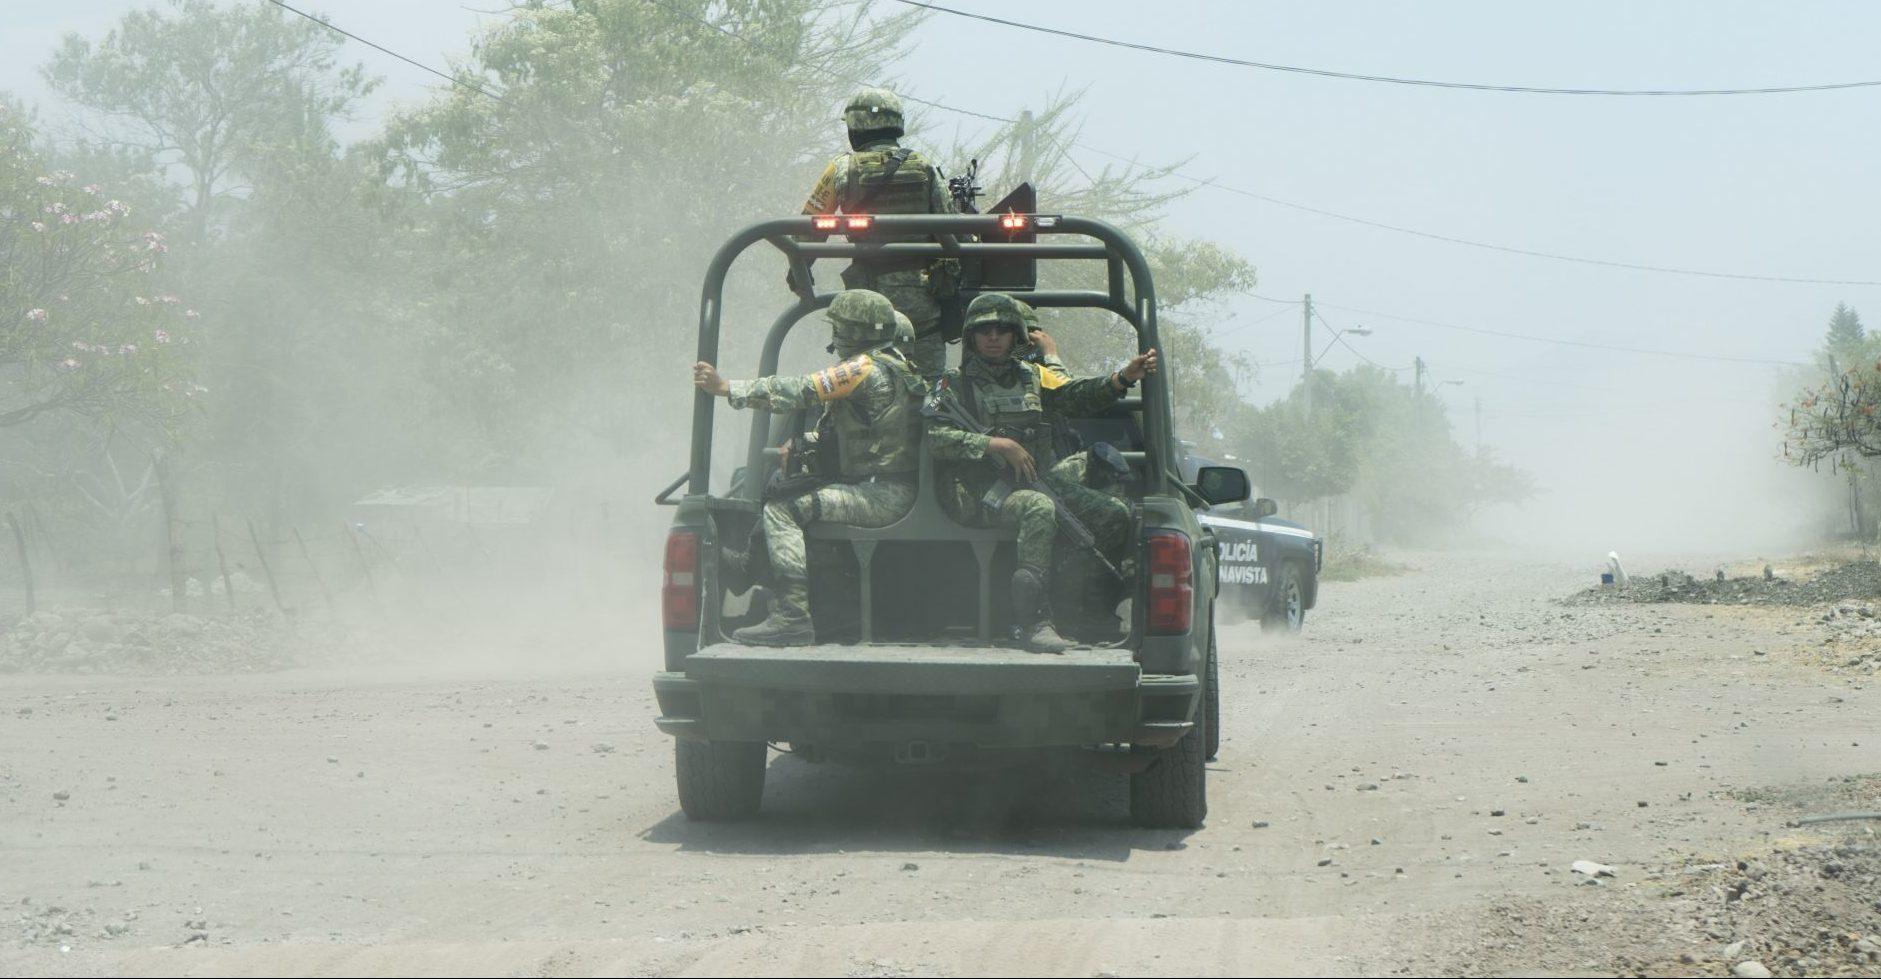 AMLO legaliza intervención militar en 12 tareas policiales; ONG acusan falta de plazos y controles